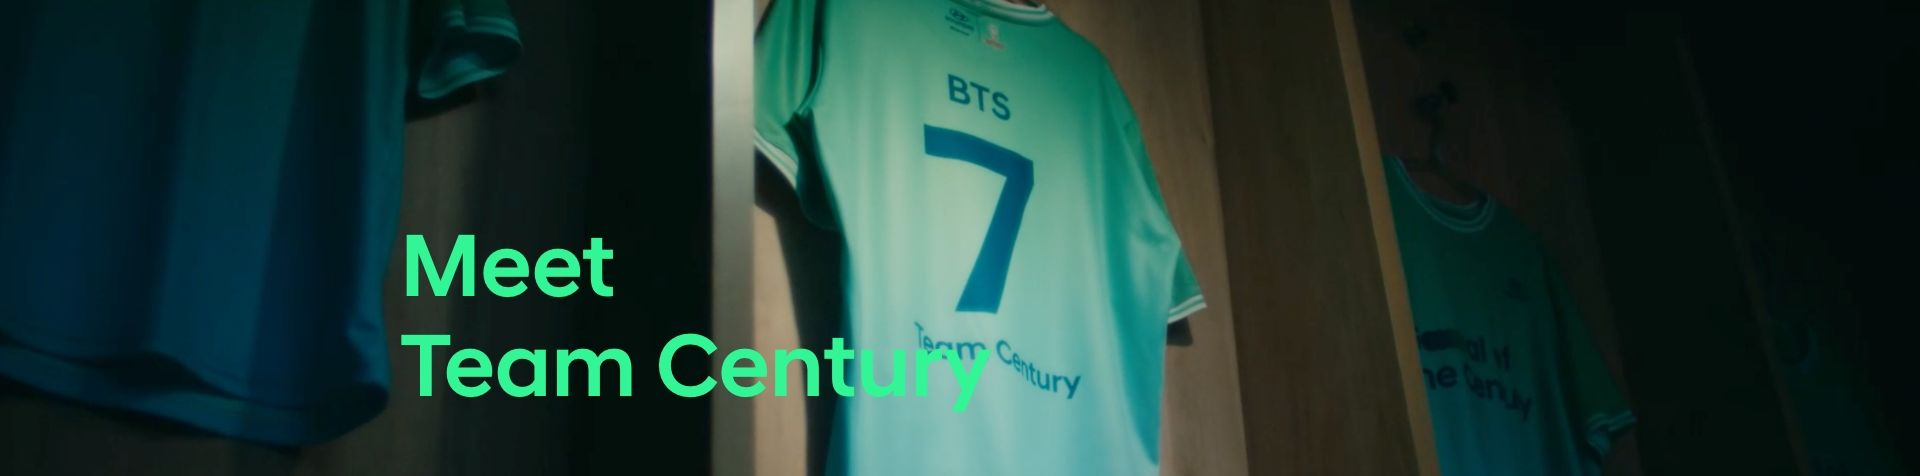 탈의실에 7이라는 숫자가 적힌 방탄소년단 소속의 팀 센추리 유니폼이 걸려 있고, 그 배경 위로 "Meet Team Century"라는 글이 녹색으로 표시되고 있습니다.